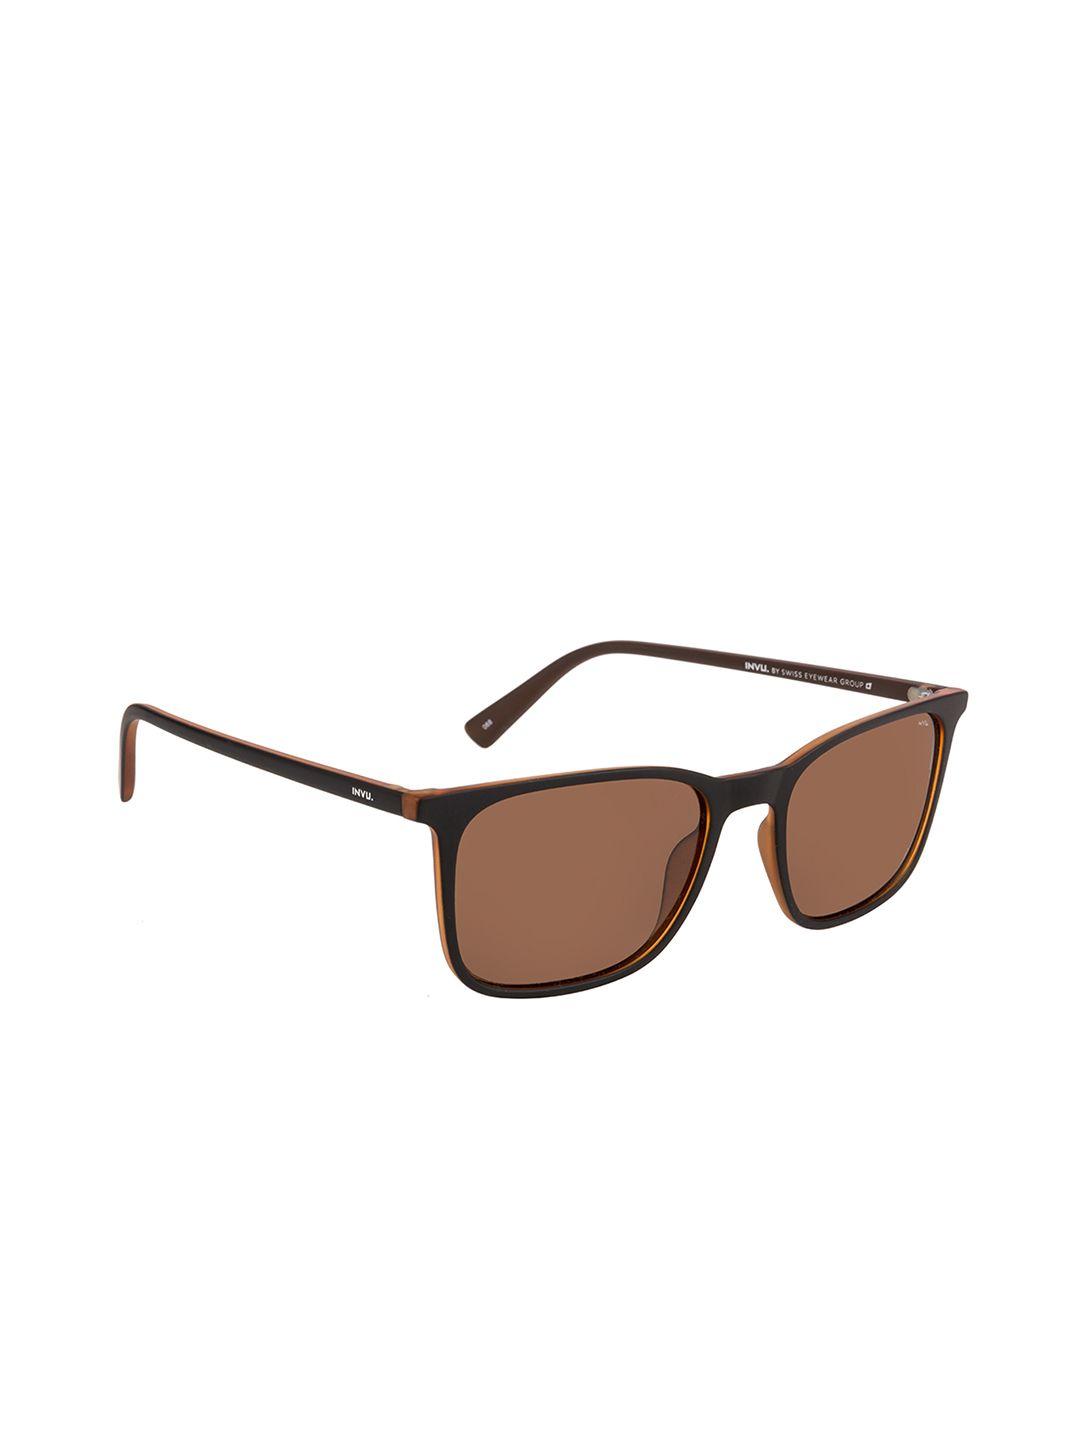 invu men brown rectangle sunglasses b2920c